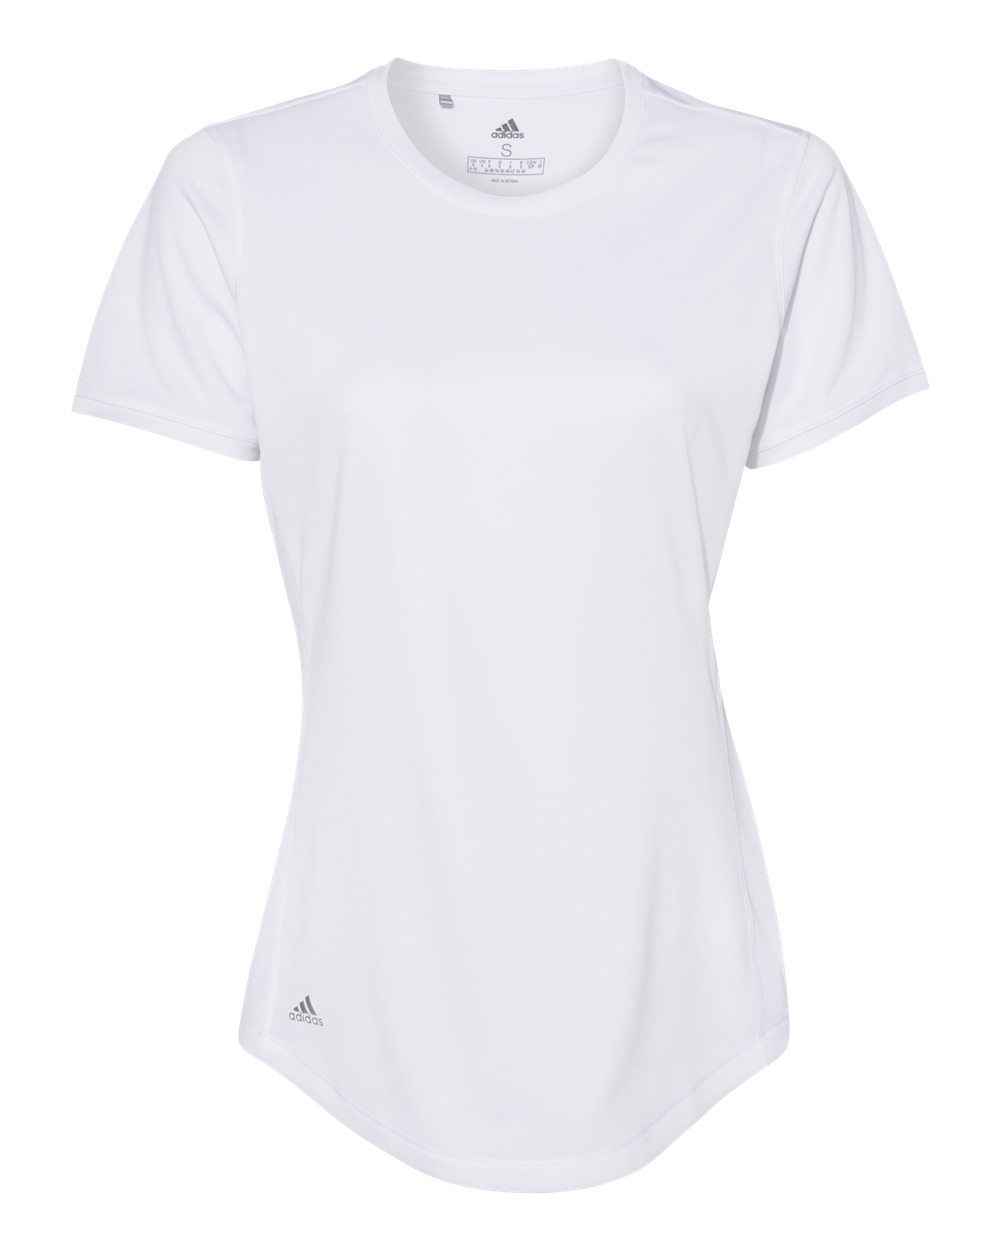 Adidas - Women's Sport T-Shirt - A377